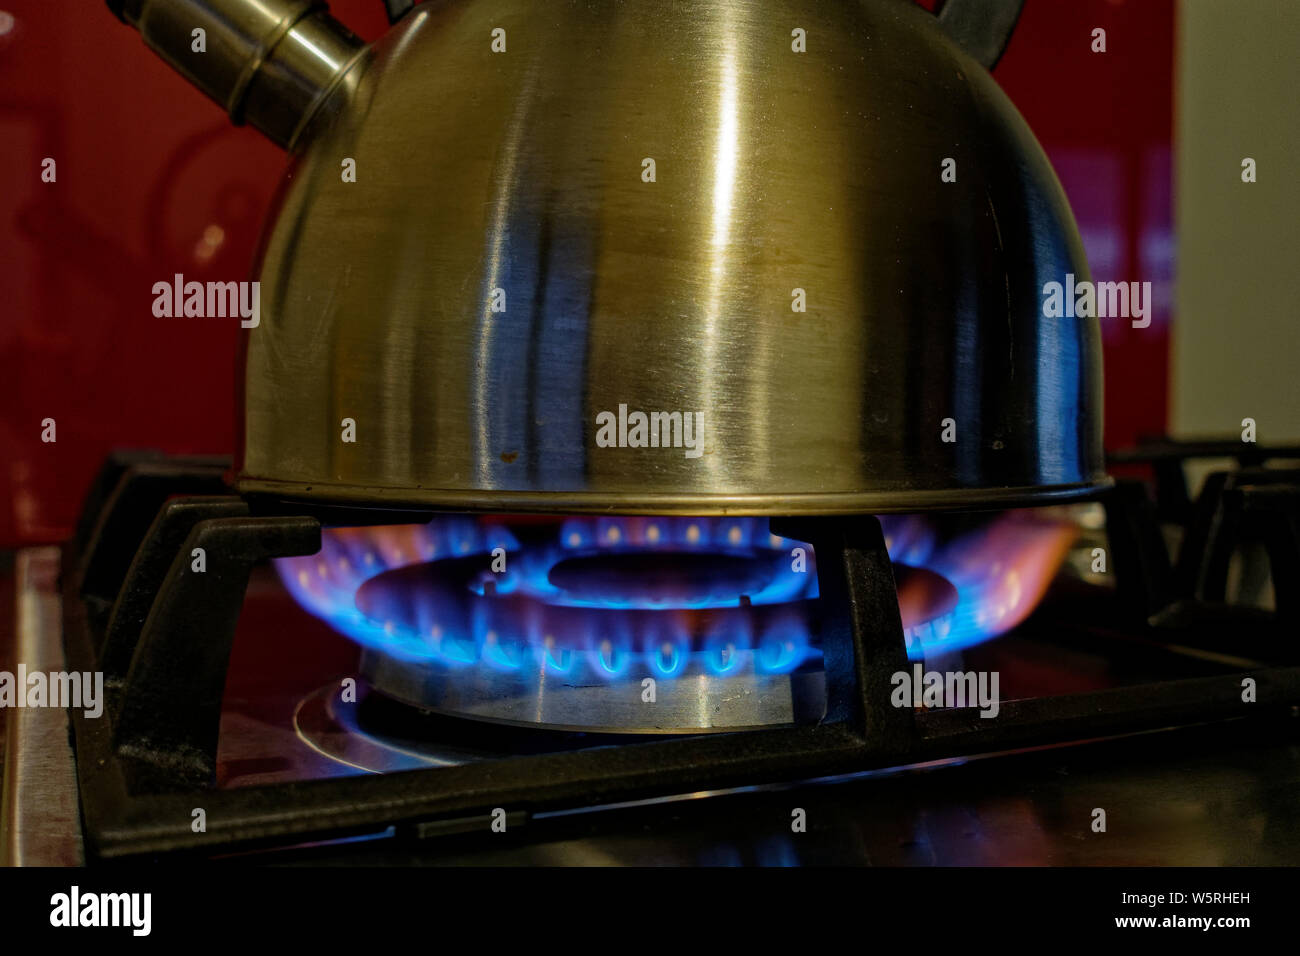 Une bouilloire d'eau bouillante sur une cuisinière à gaz. Nous sommes maintenant la cuisson au gaz. Banque D'Images